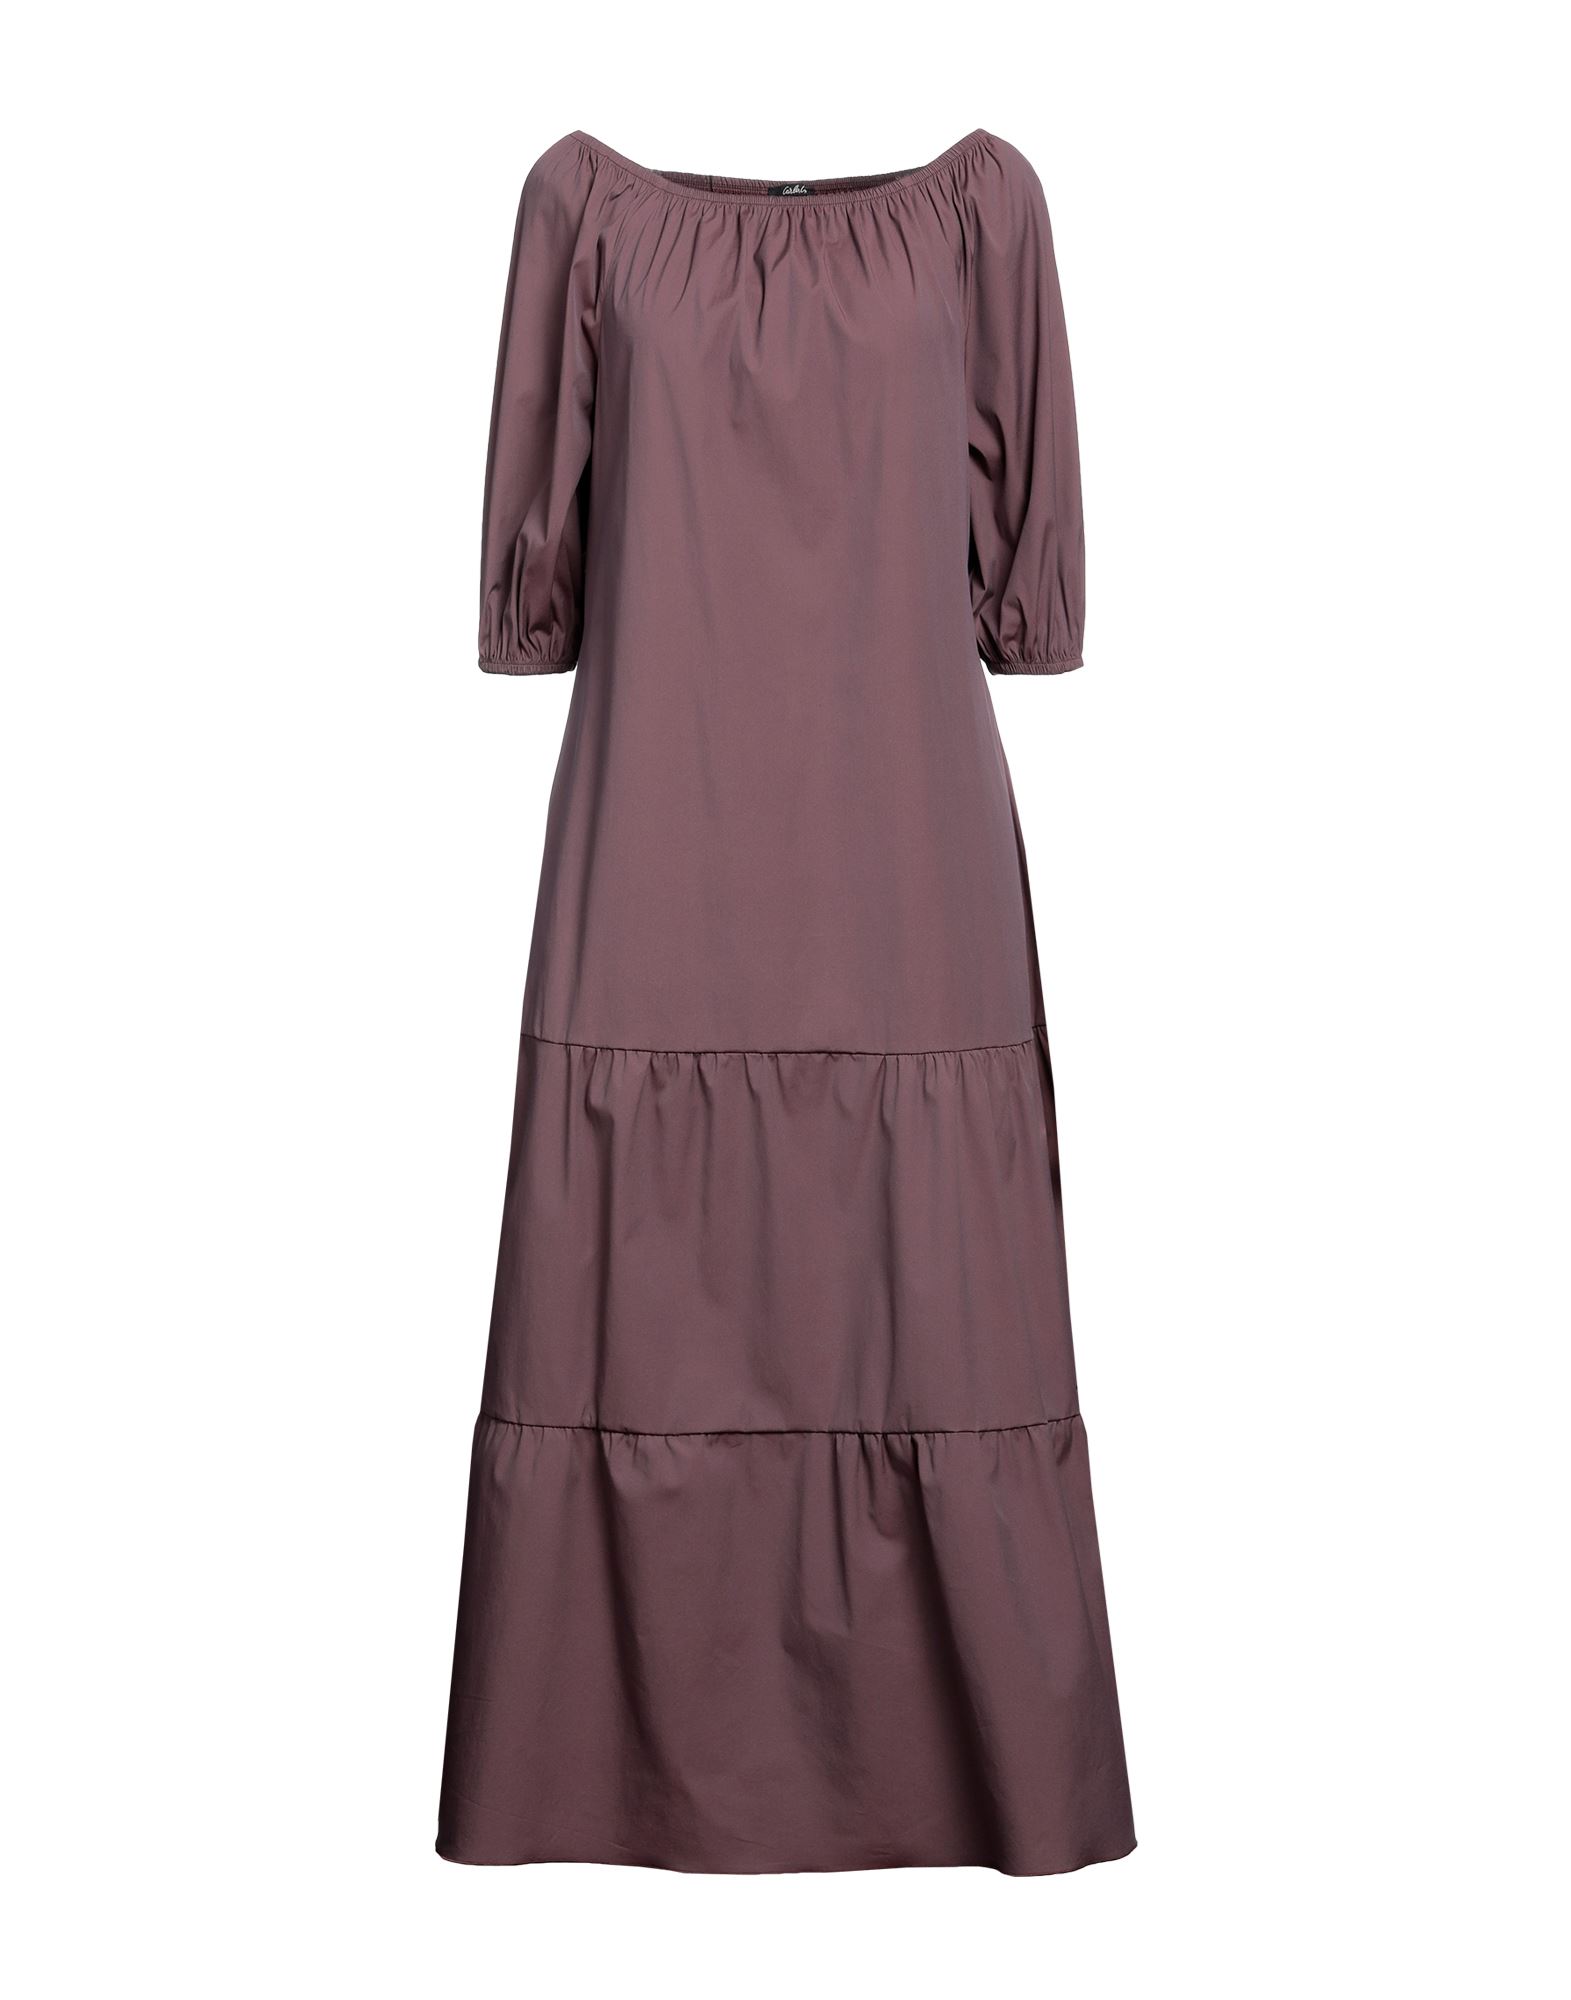 Carla G. Long Dresses In Brown